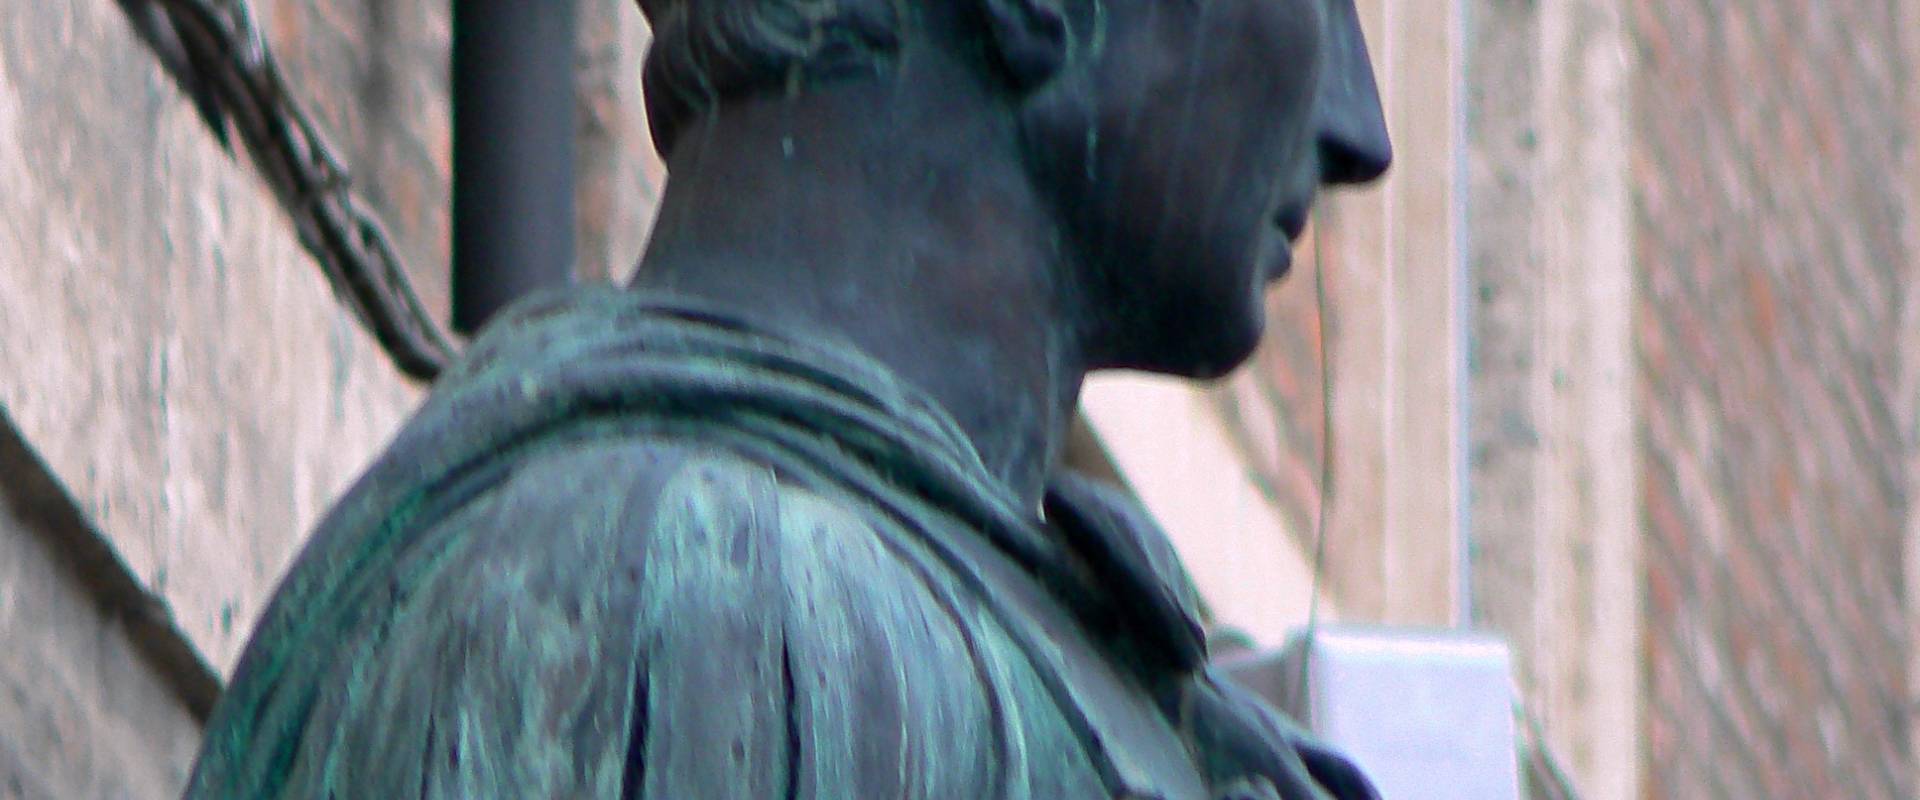 Rimini profilo statua di Giulio Cesare 2 foto di Paperoastro